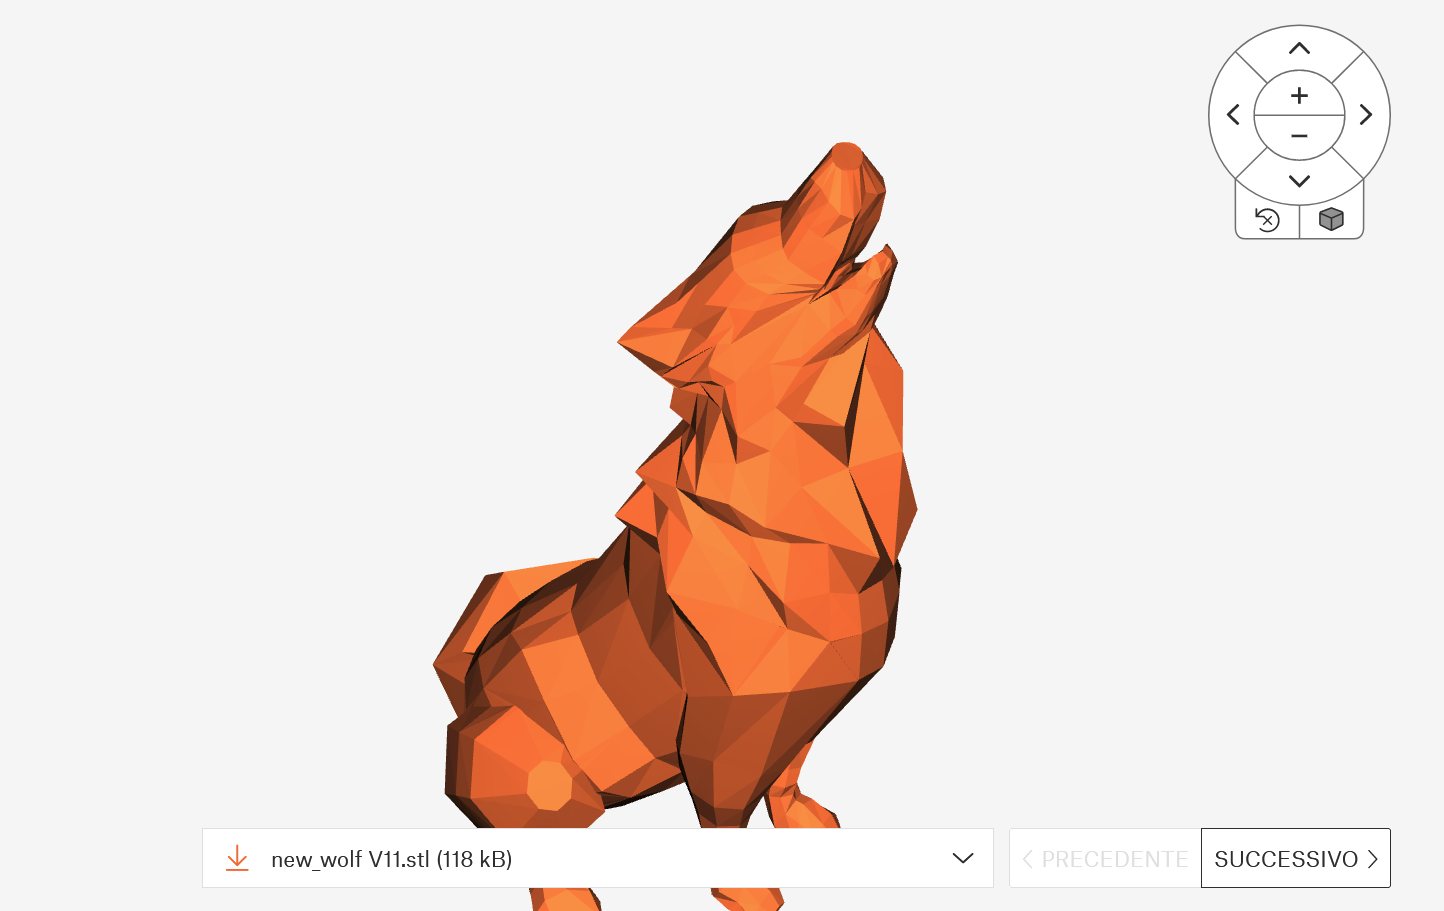 printables - visualizzatore di modelli stampabili in 3d online